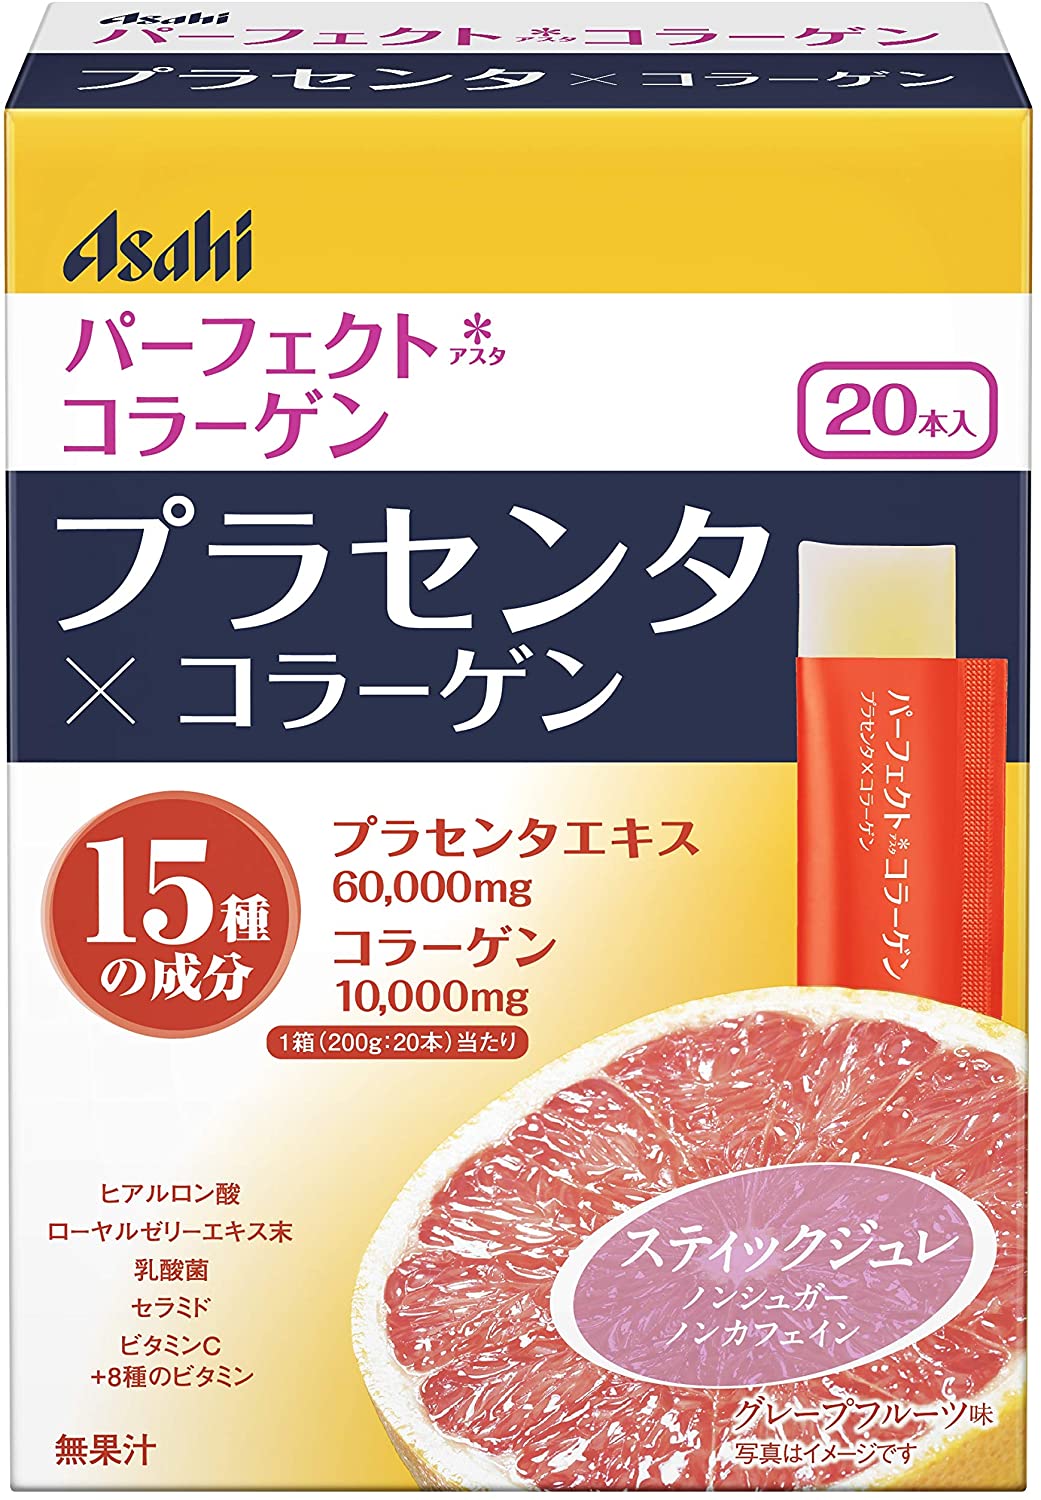 Плацентарно - коллагеновое желе Asahi со вкусом грейпфрута, 20 шт